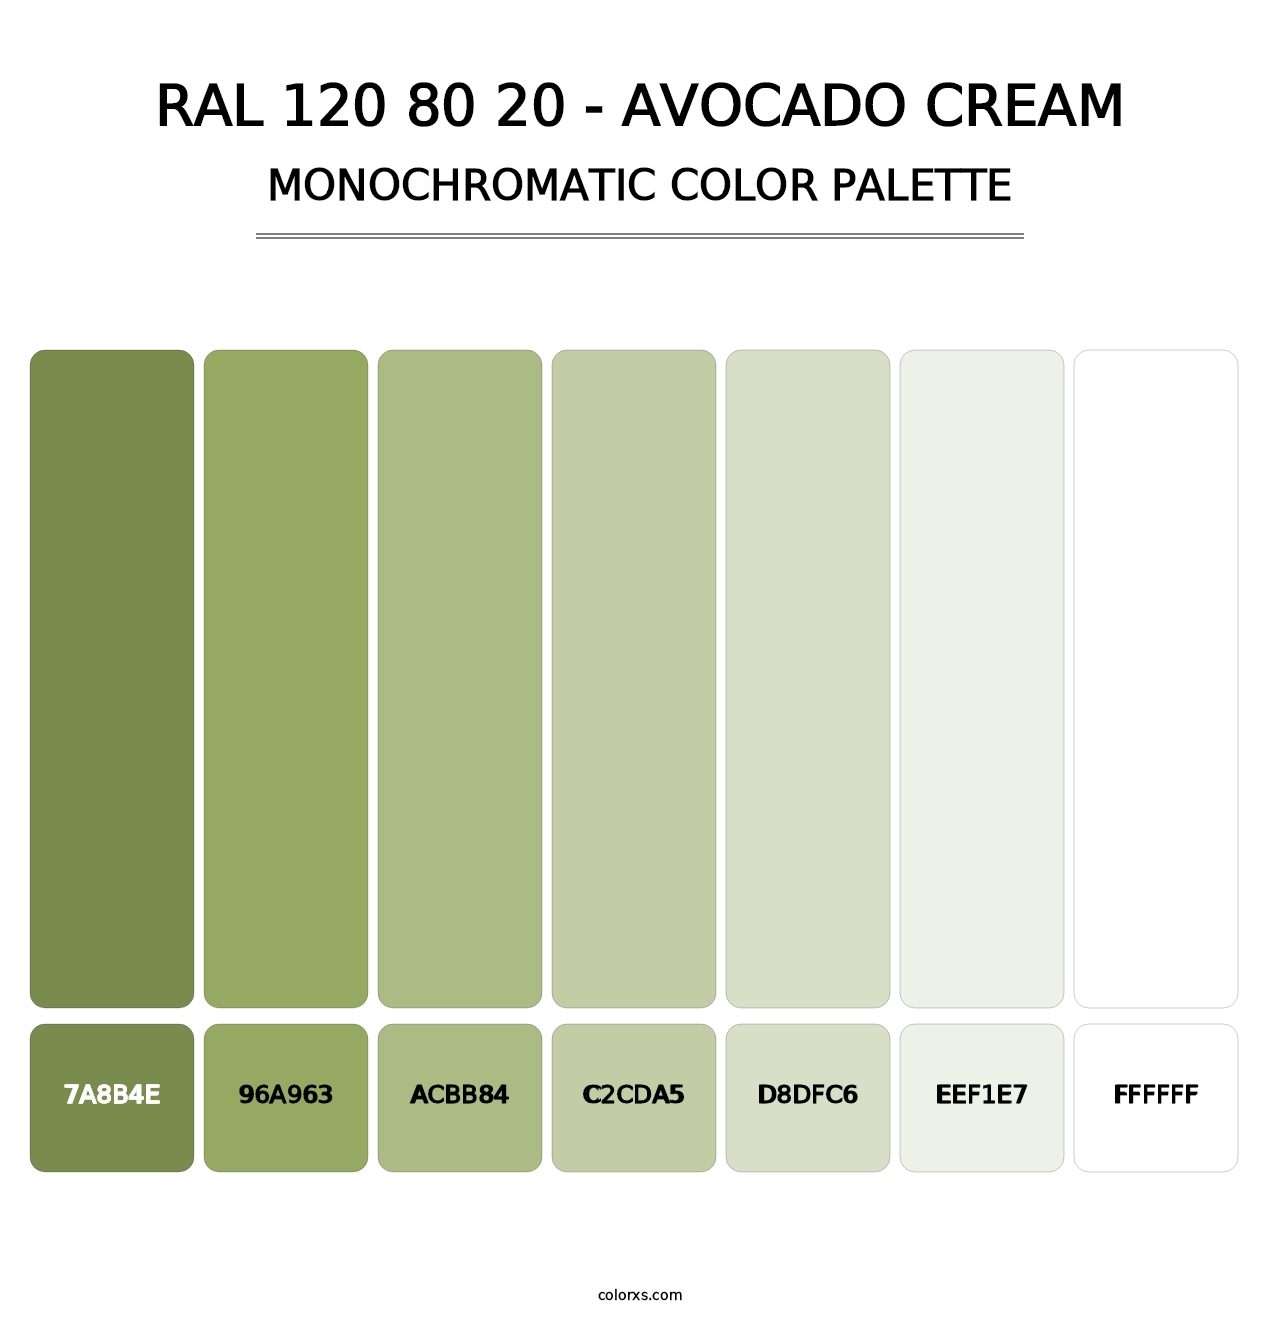 RAL 120 80 20 - Avocado Cream - Monochromatic Color Palette